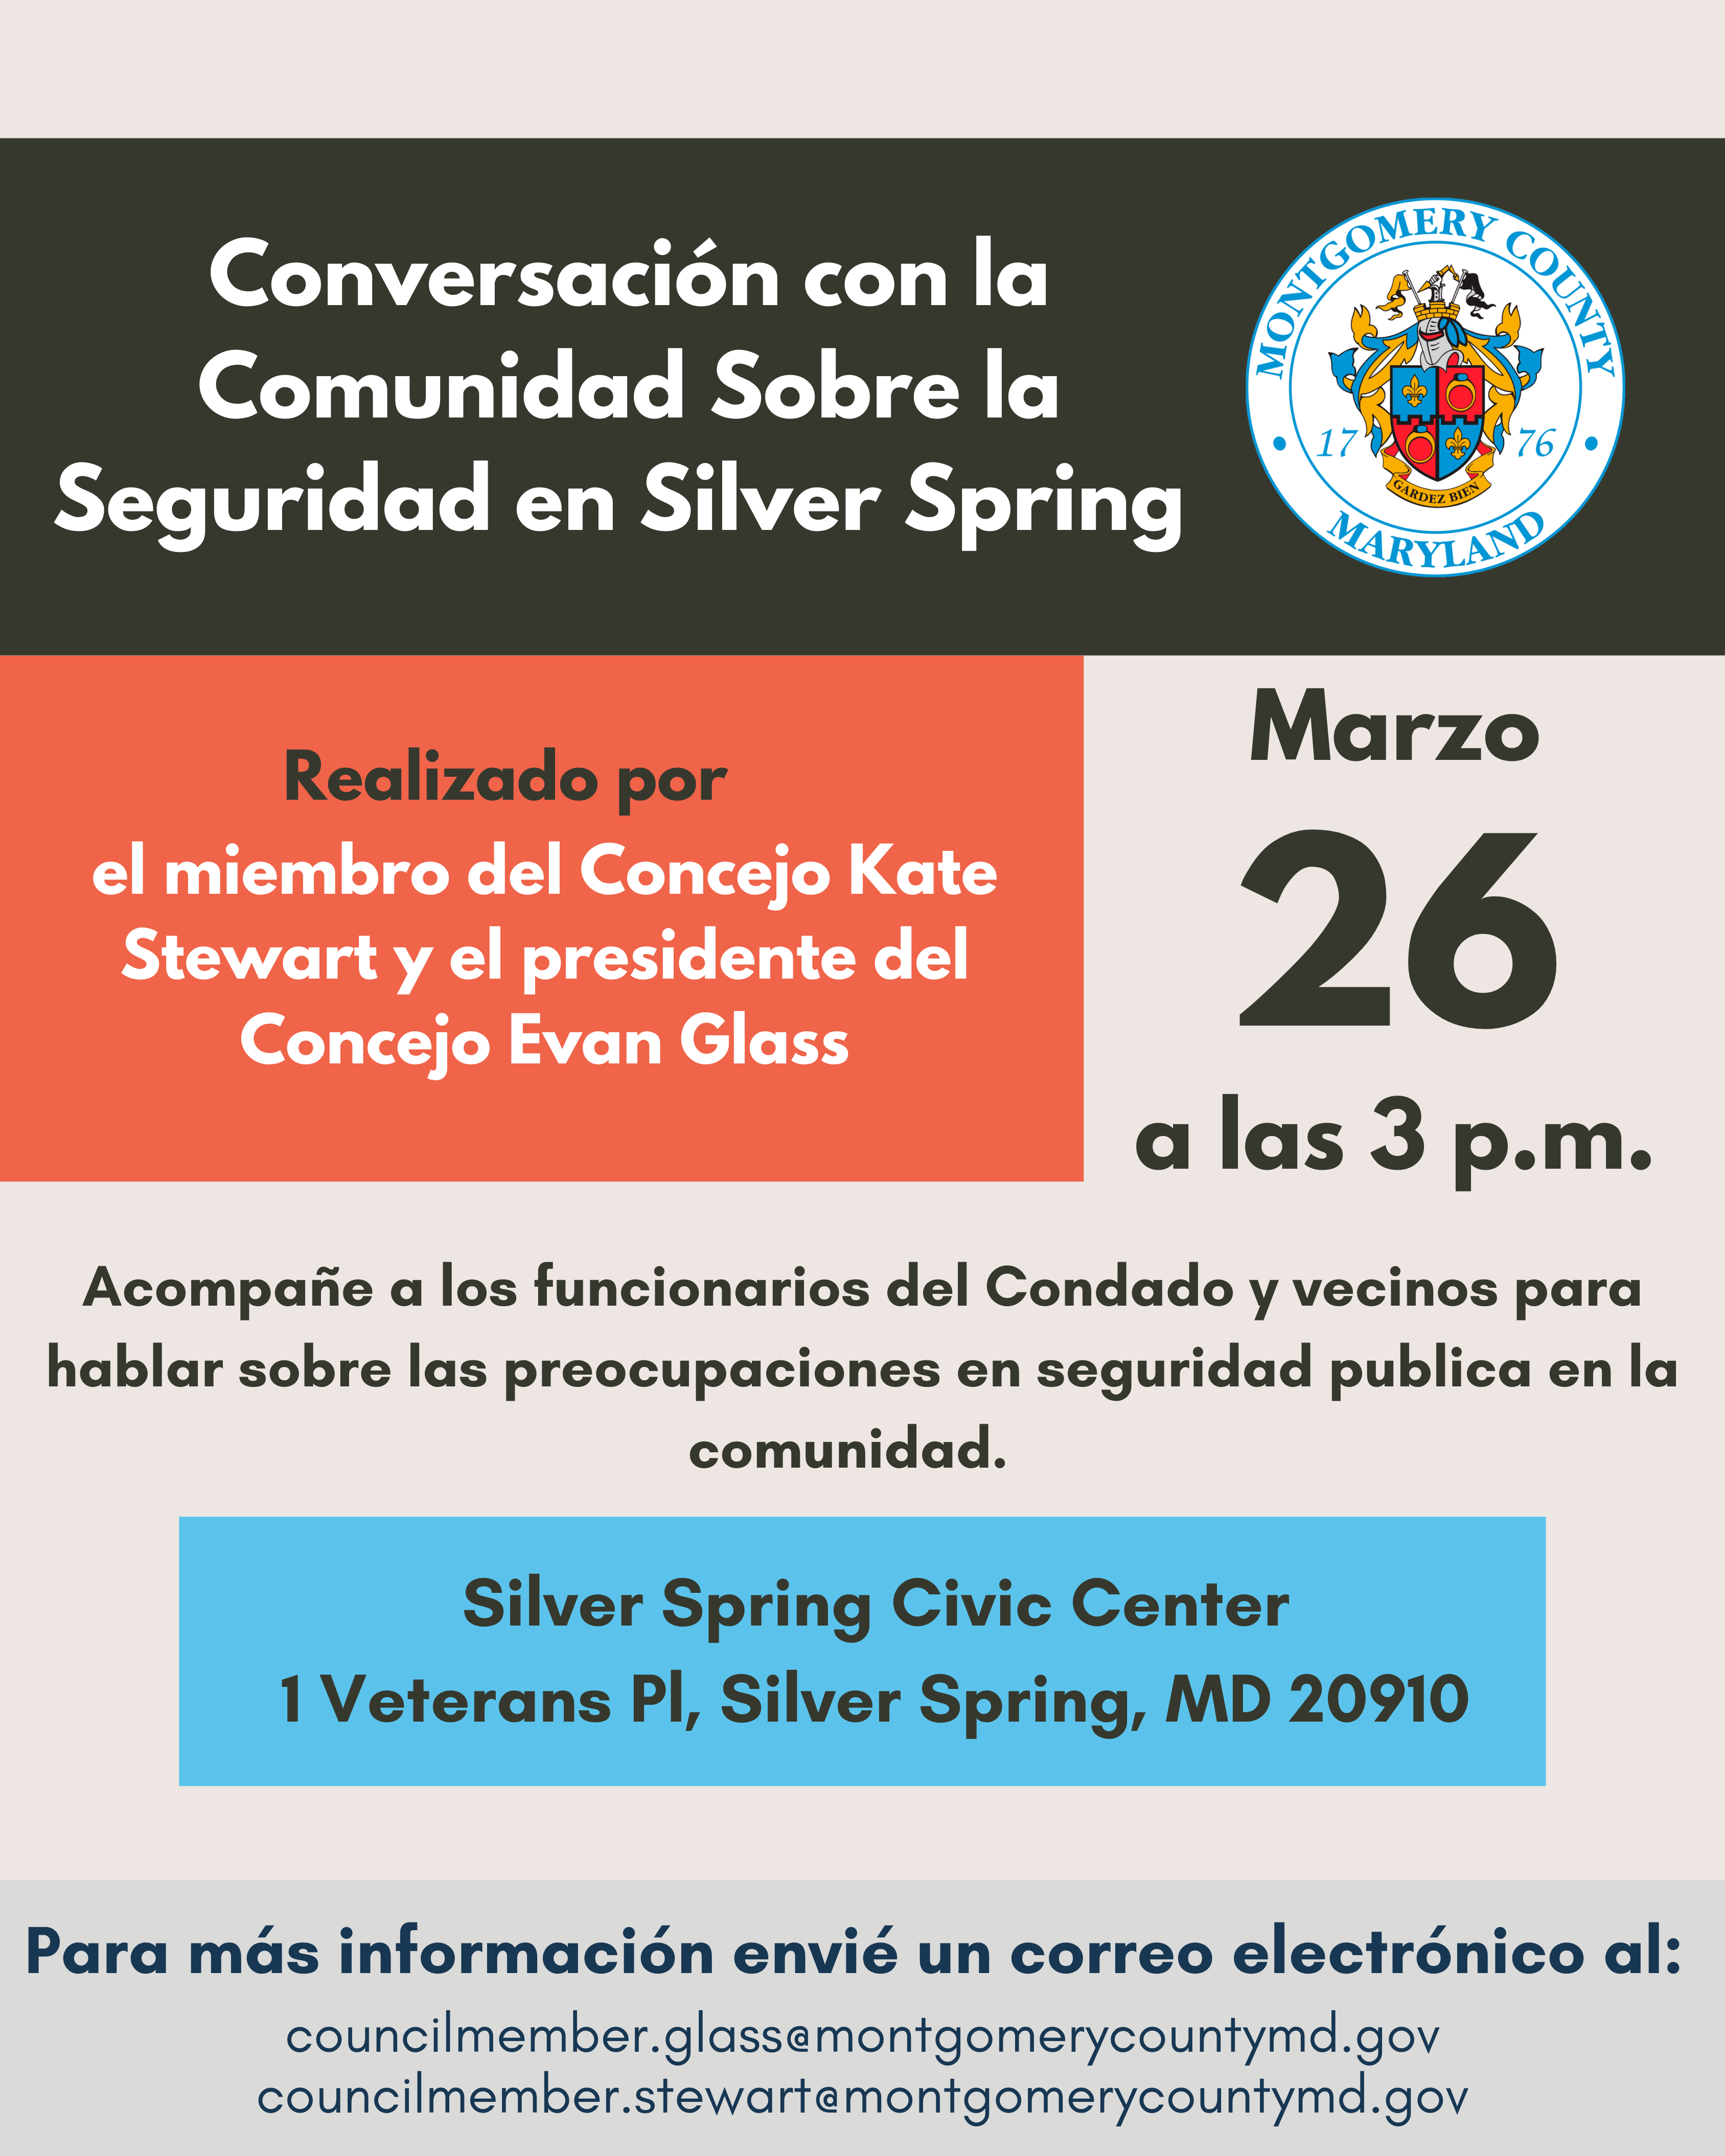 Conversacion con la comunidad en Silver Spring